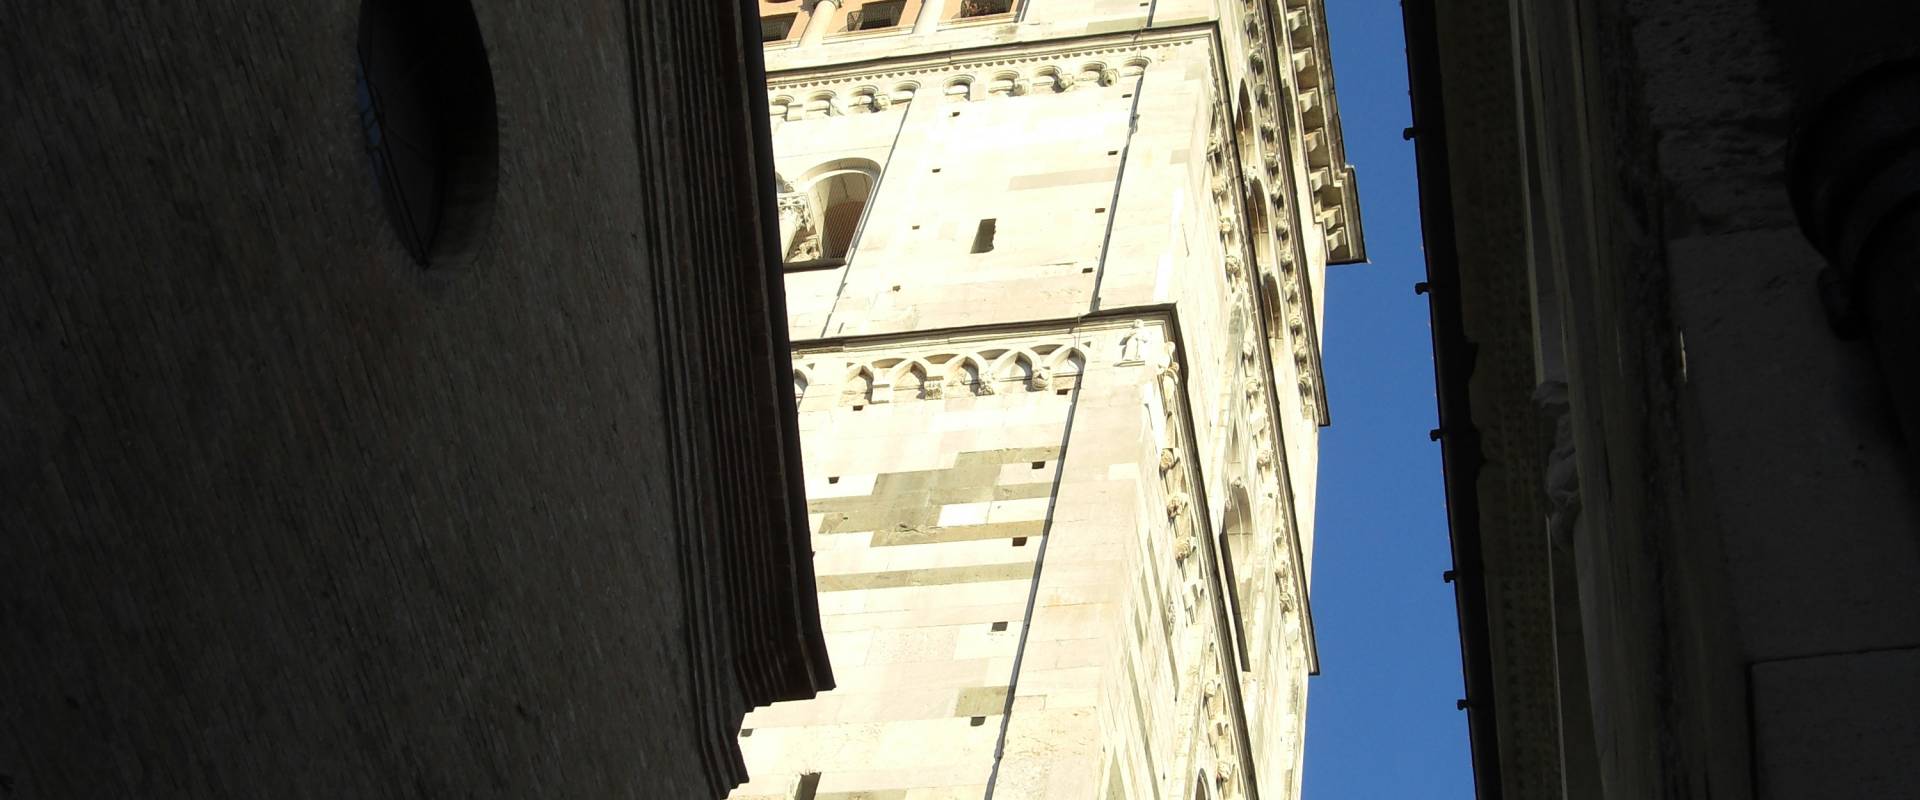 Torre Ghirlandina di Modena dal basso 5 foto di Matteolel